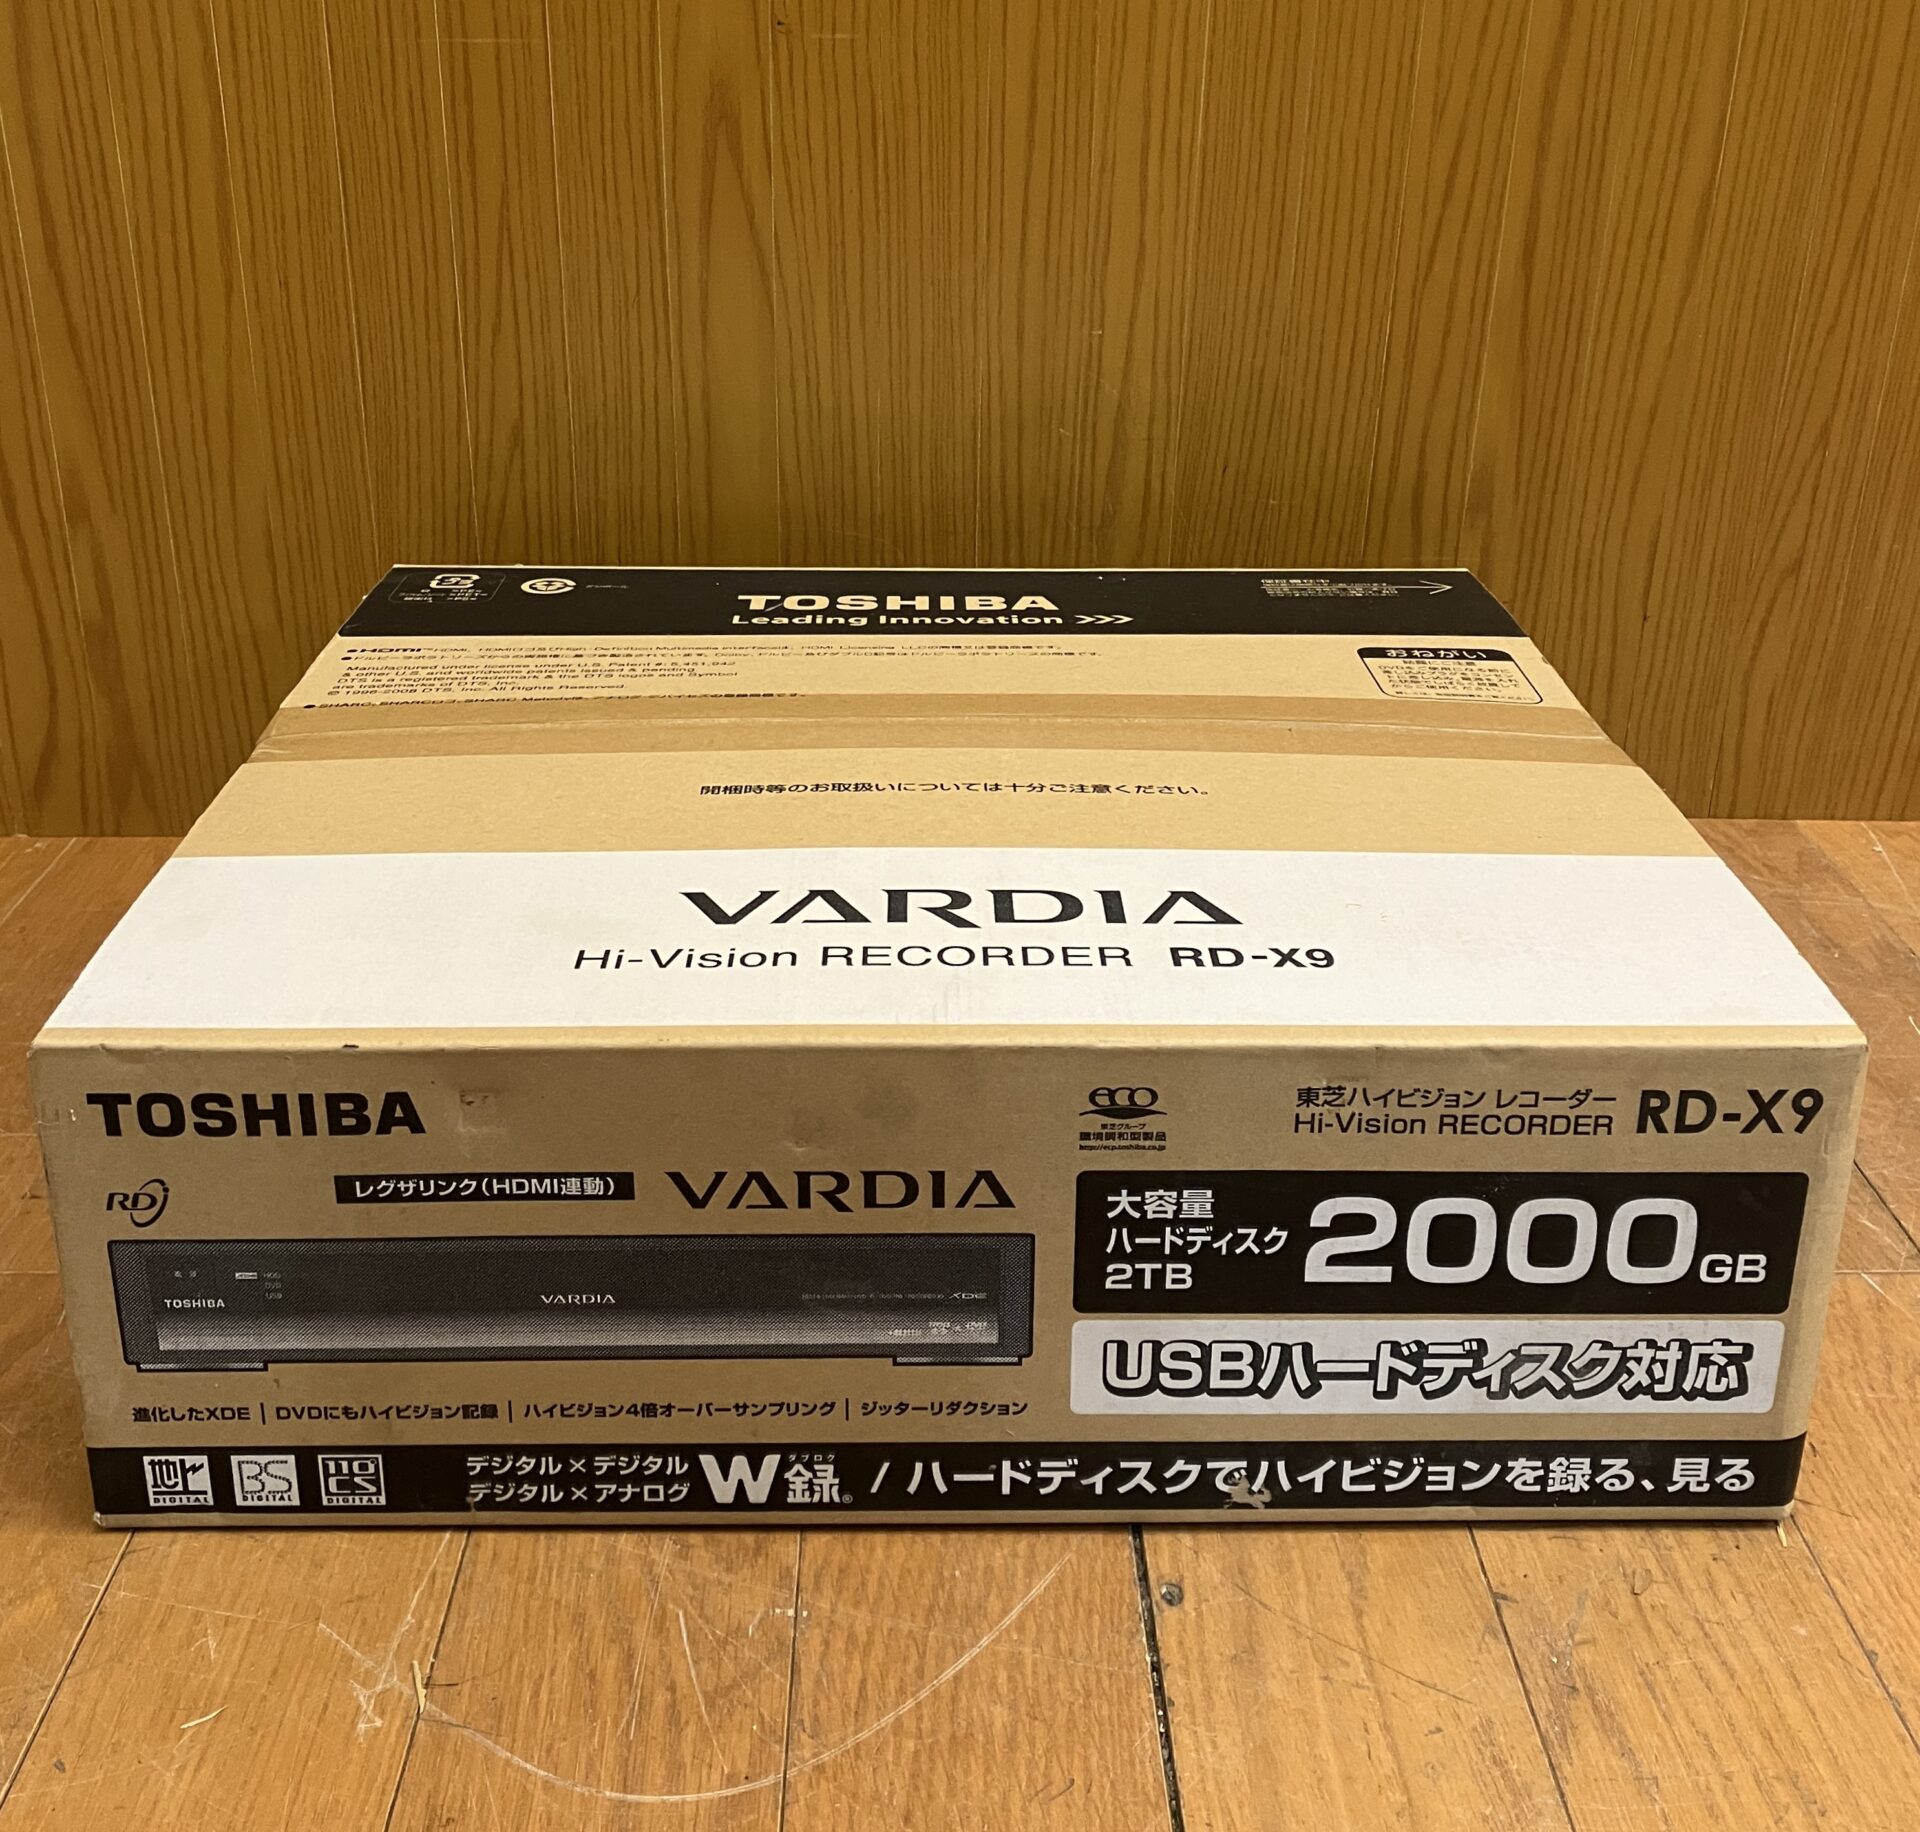 新品未使用品 東芝製ハイビジョンレコーダー VARDIA RD-X9 フラッグシップモデル